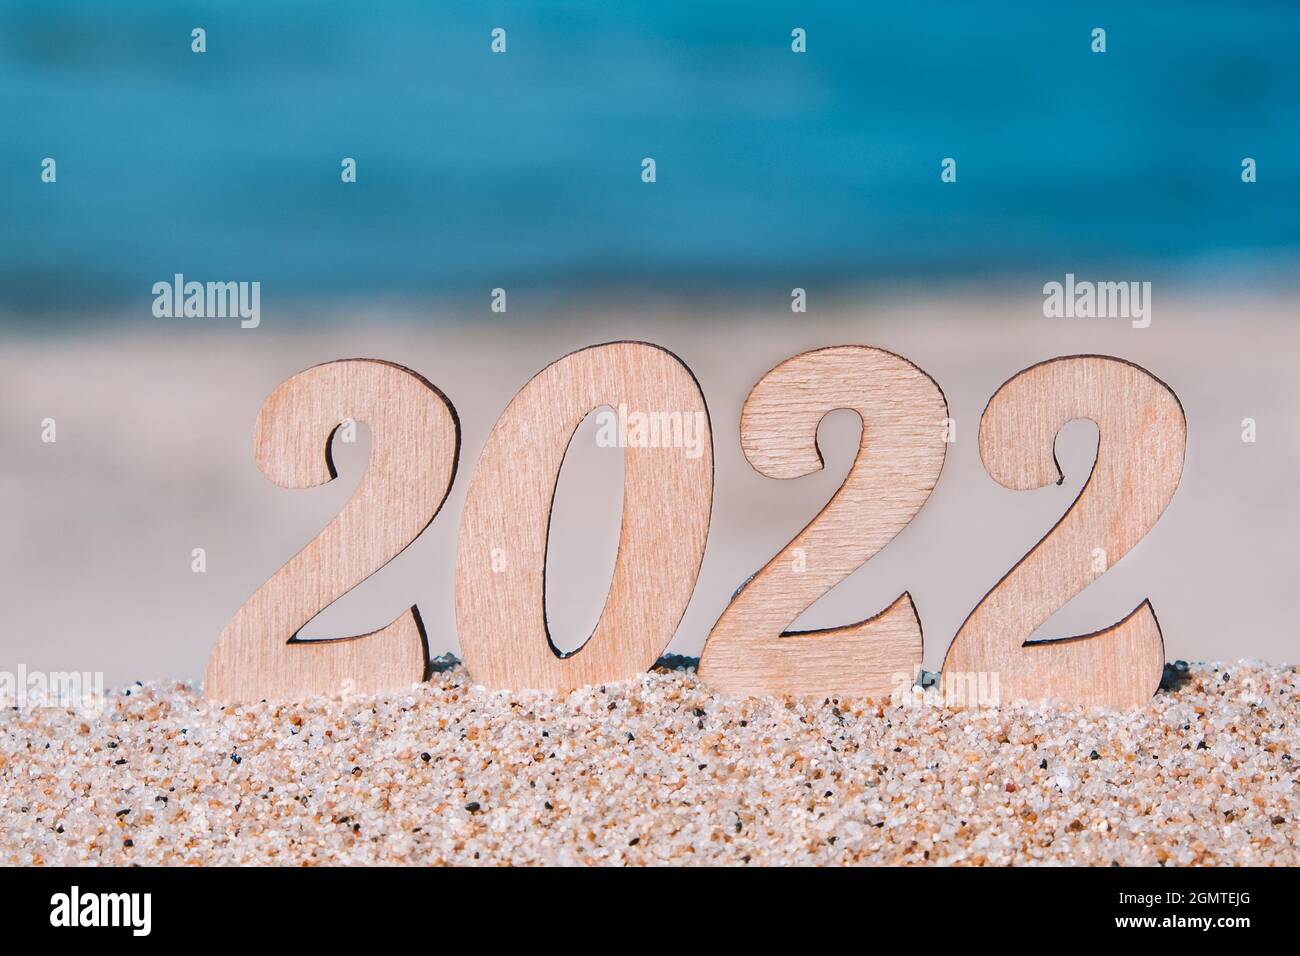 Número de Año Nuevo 2022 en la playa junto al mar. Concepto de turismo, recreación y viajes. Postal navideña creativa. Espacio de copia. Enfoque selectivo. Foto de stock